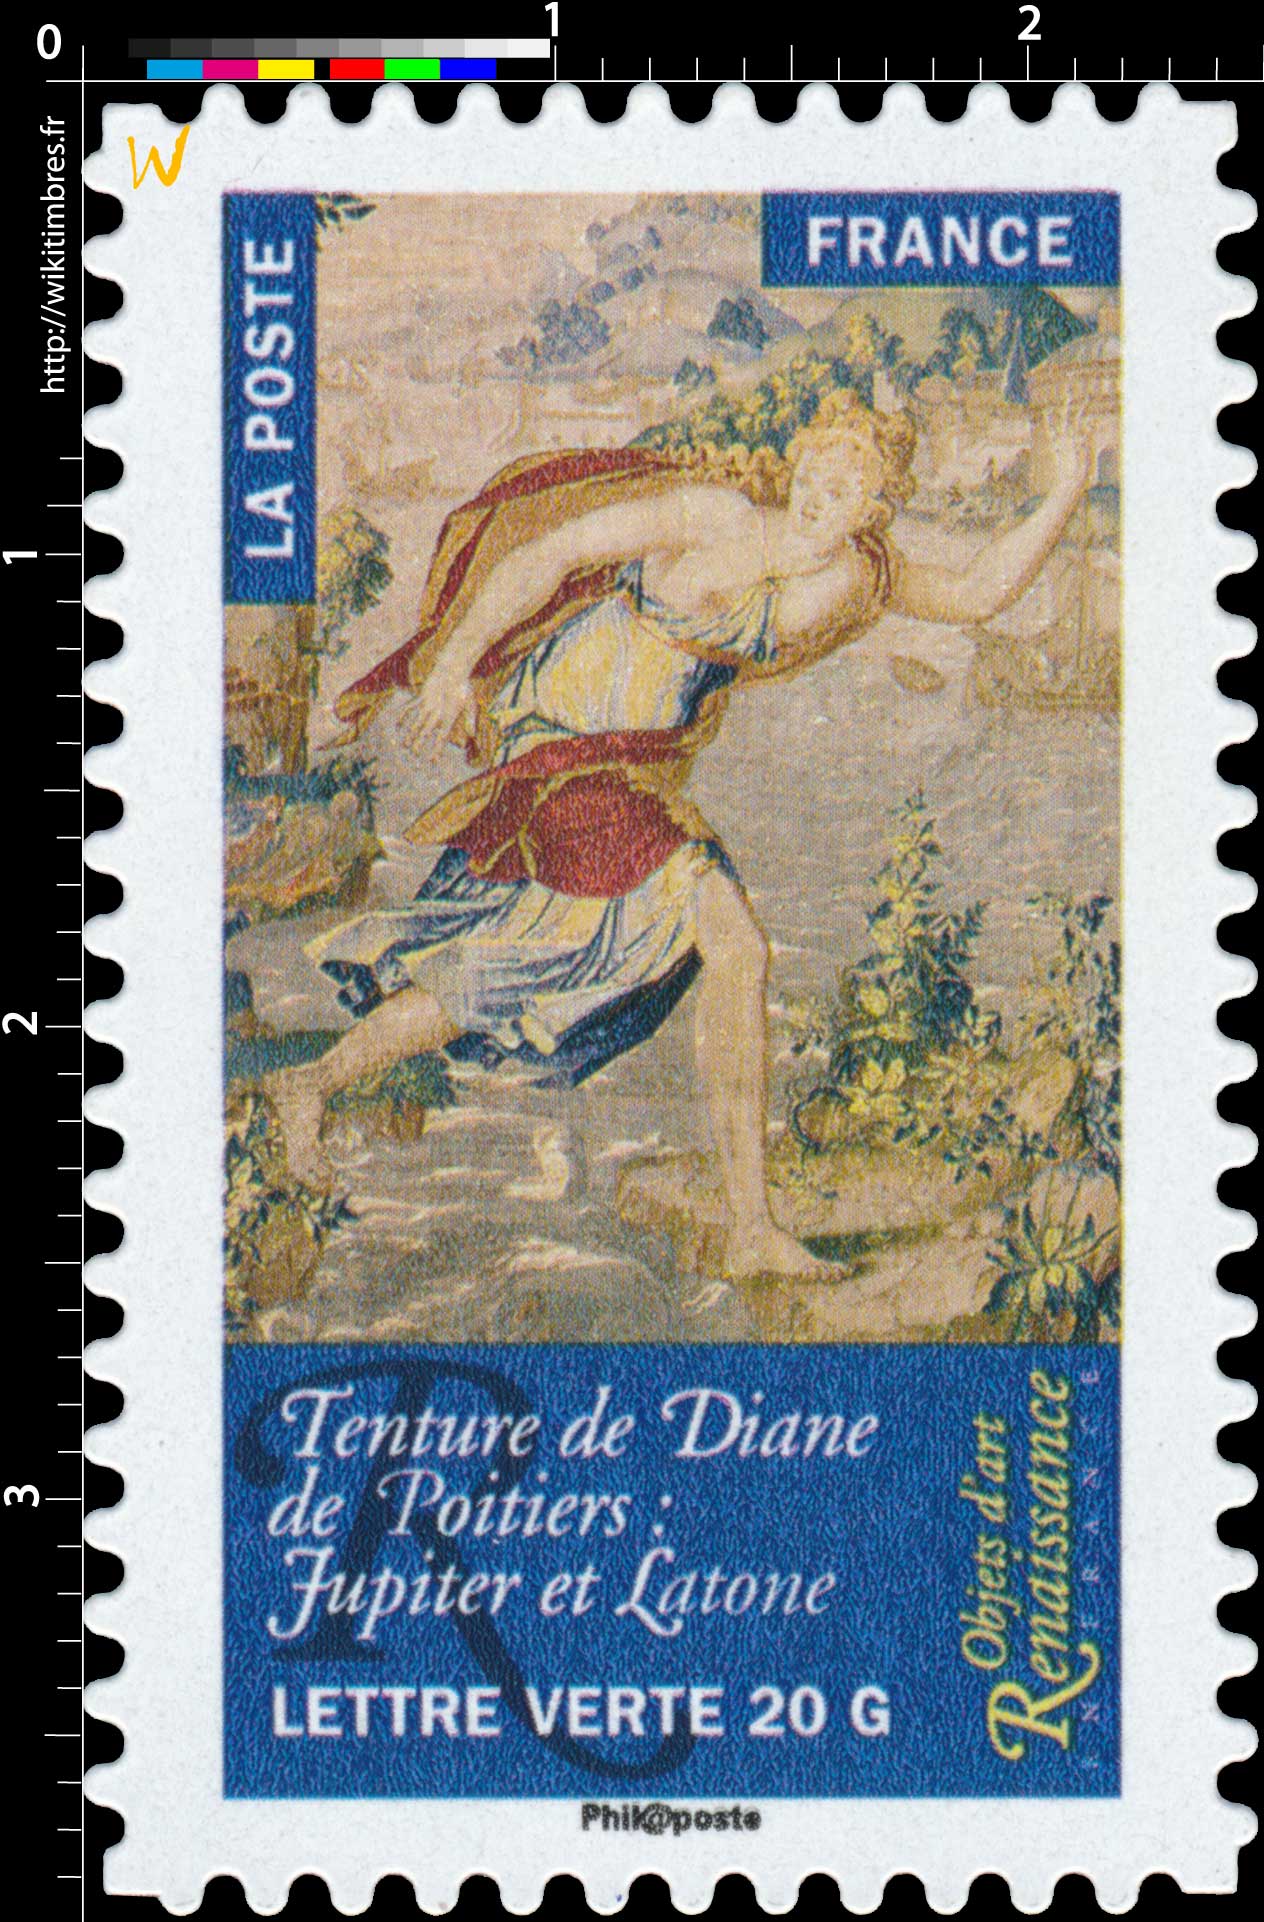 2014 Objets d'art  –  Renaissance en France  –  Tenture de Diane de Poitiers : Jupiter et Latone